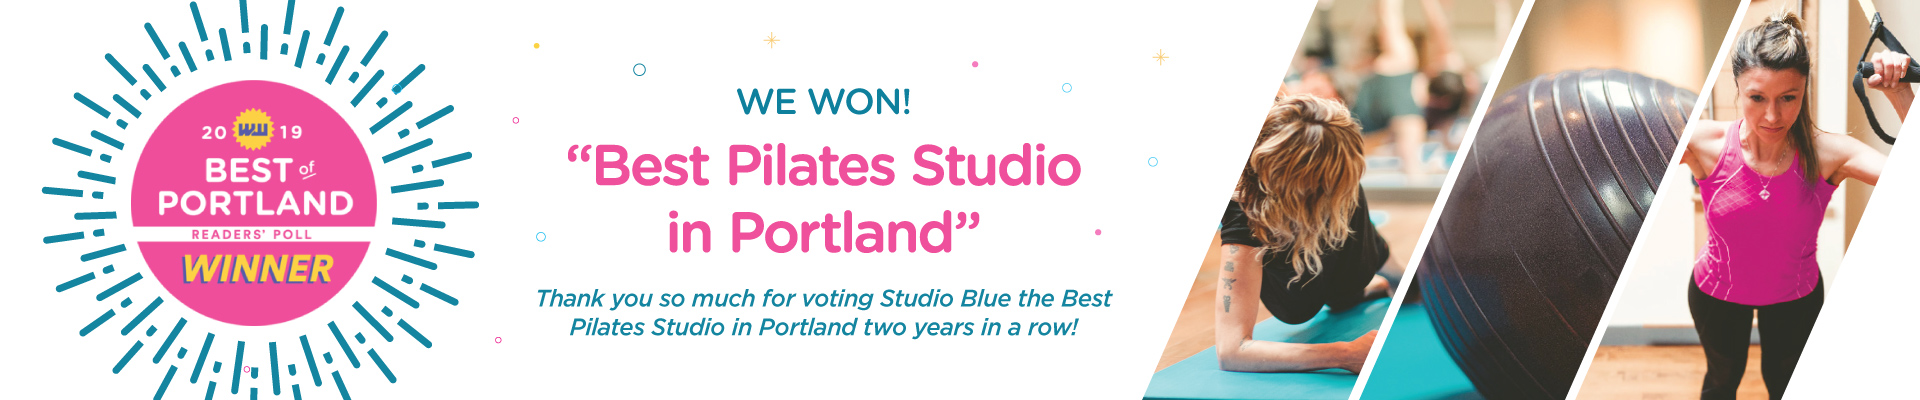 Best of Portland: Winner Best Pilates Studio in Portland, Oregon